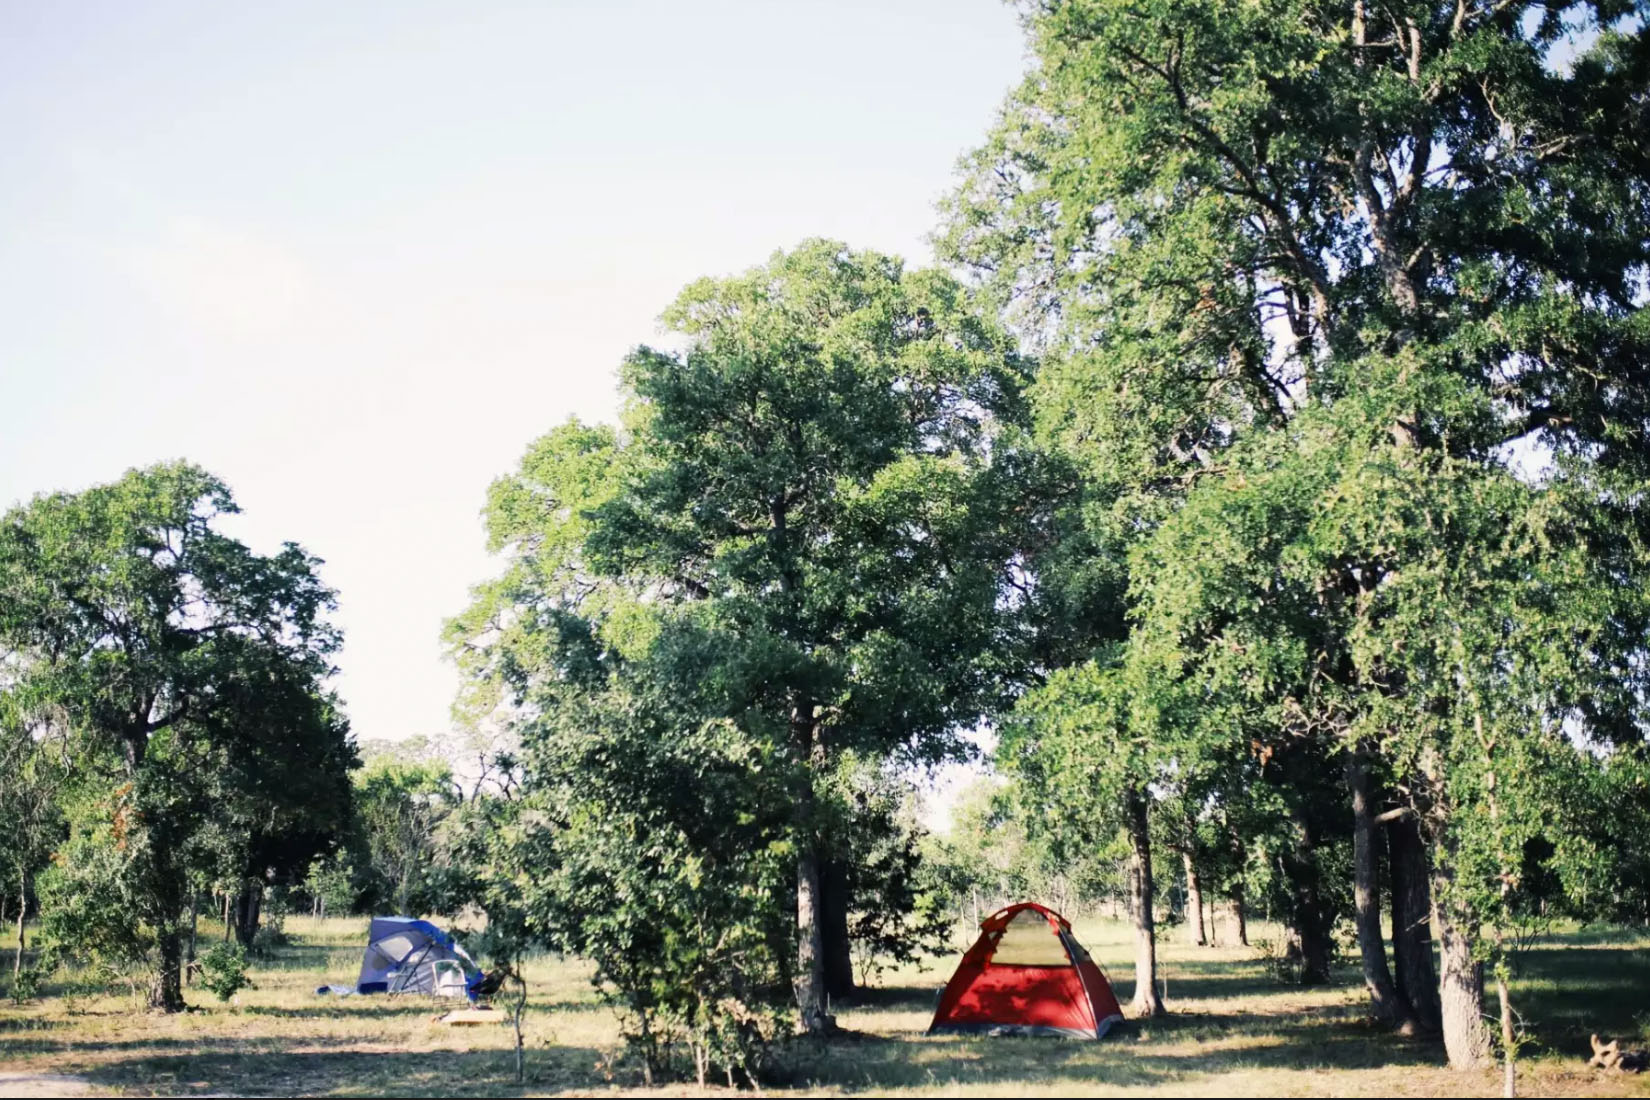 Al 'S Hideaway erbjuder billig camping i Texas för $25's Hideaway offers low-cost camping in Texas for $25